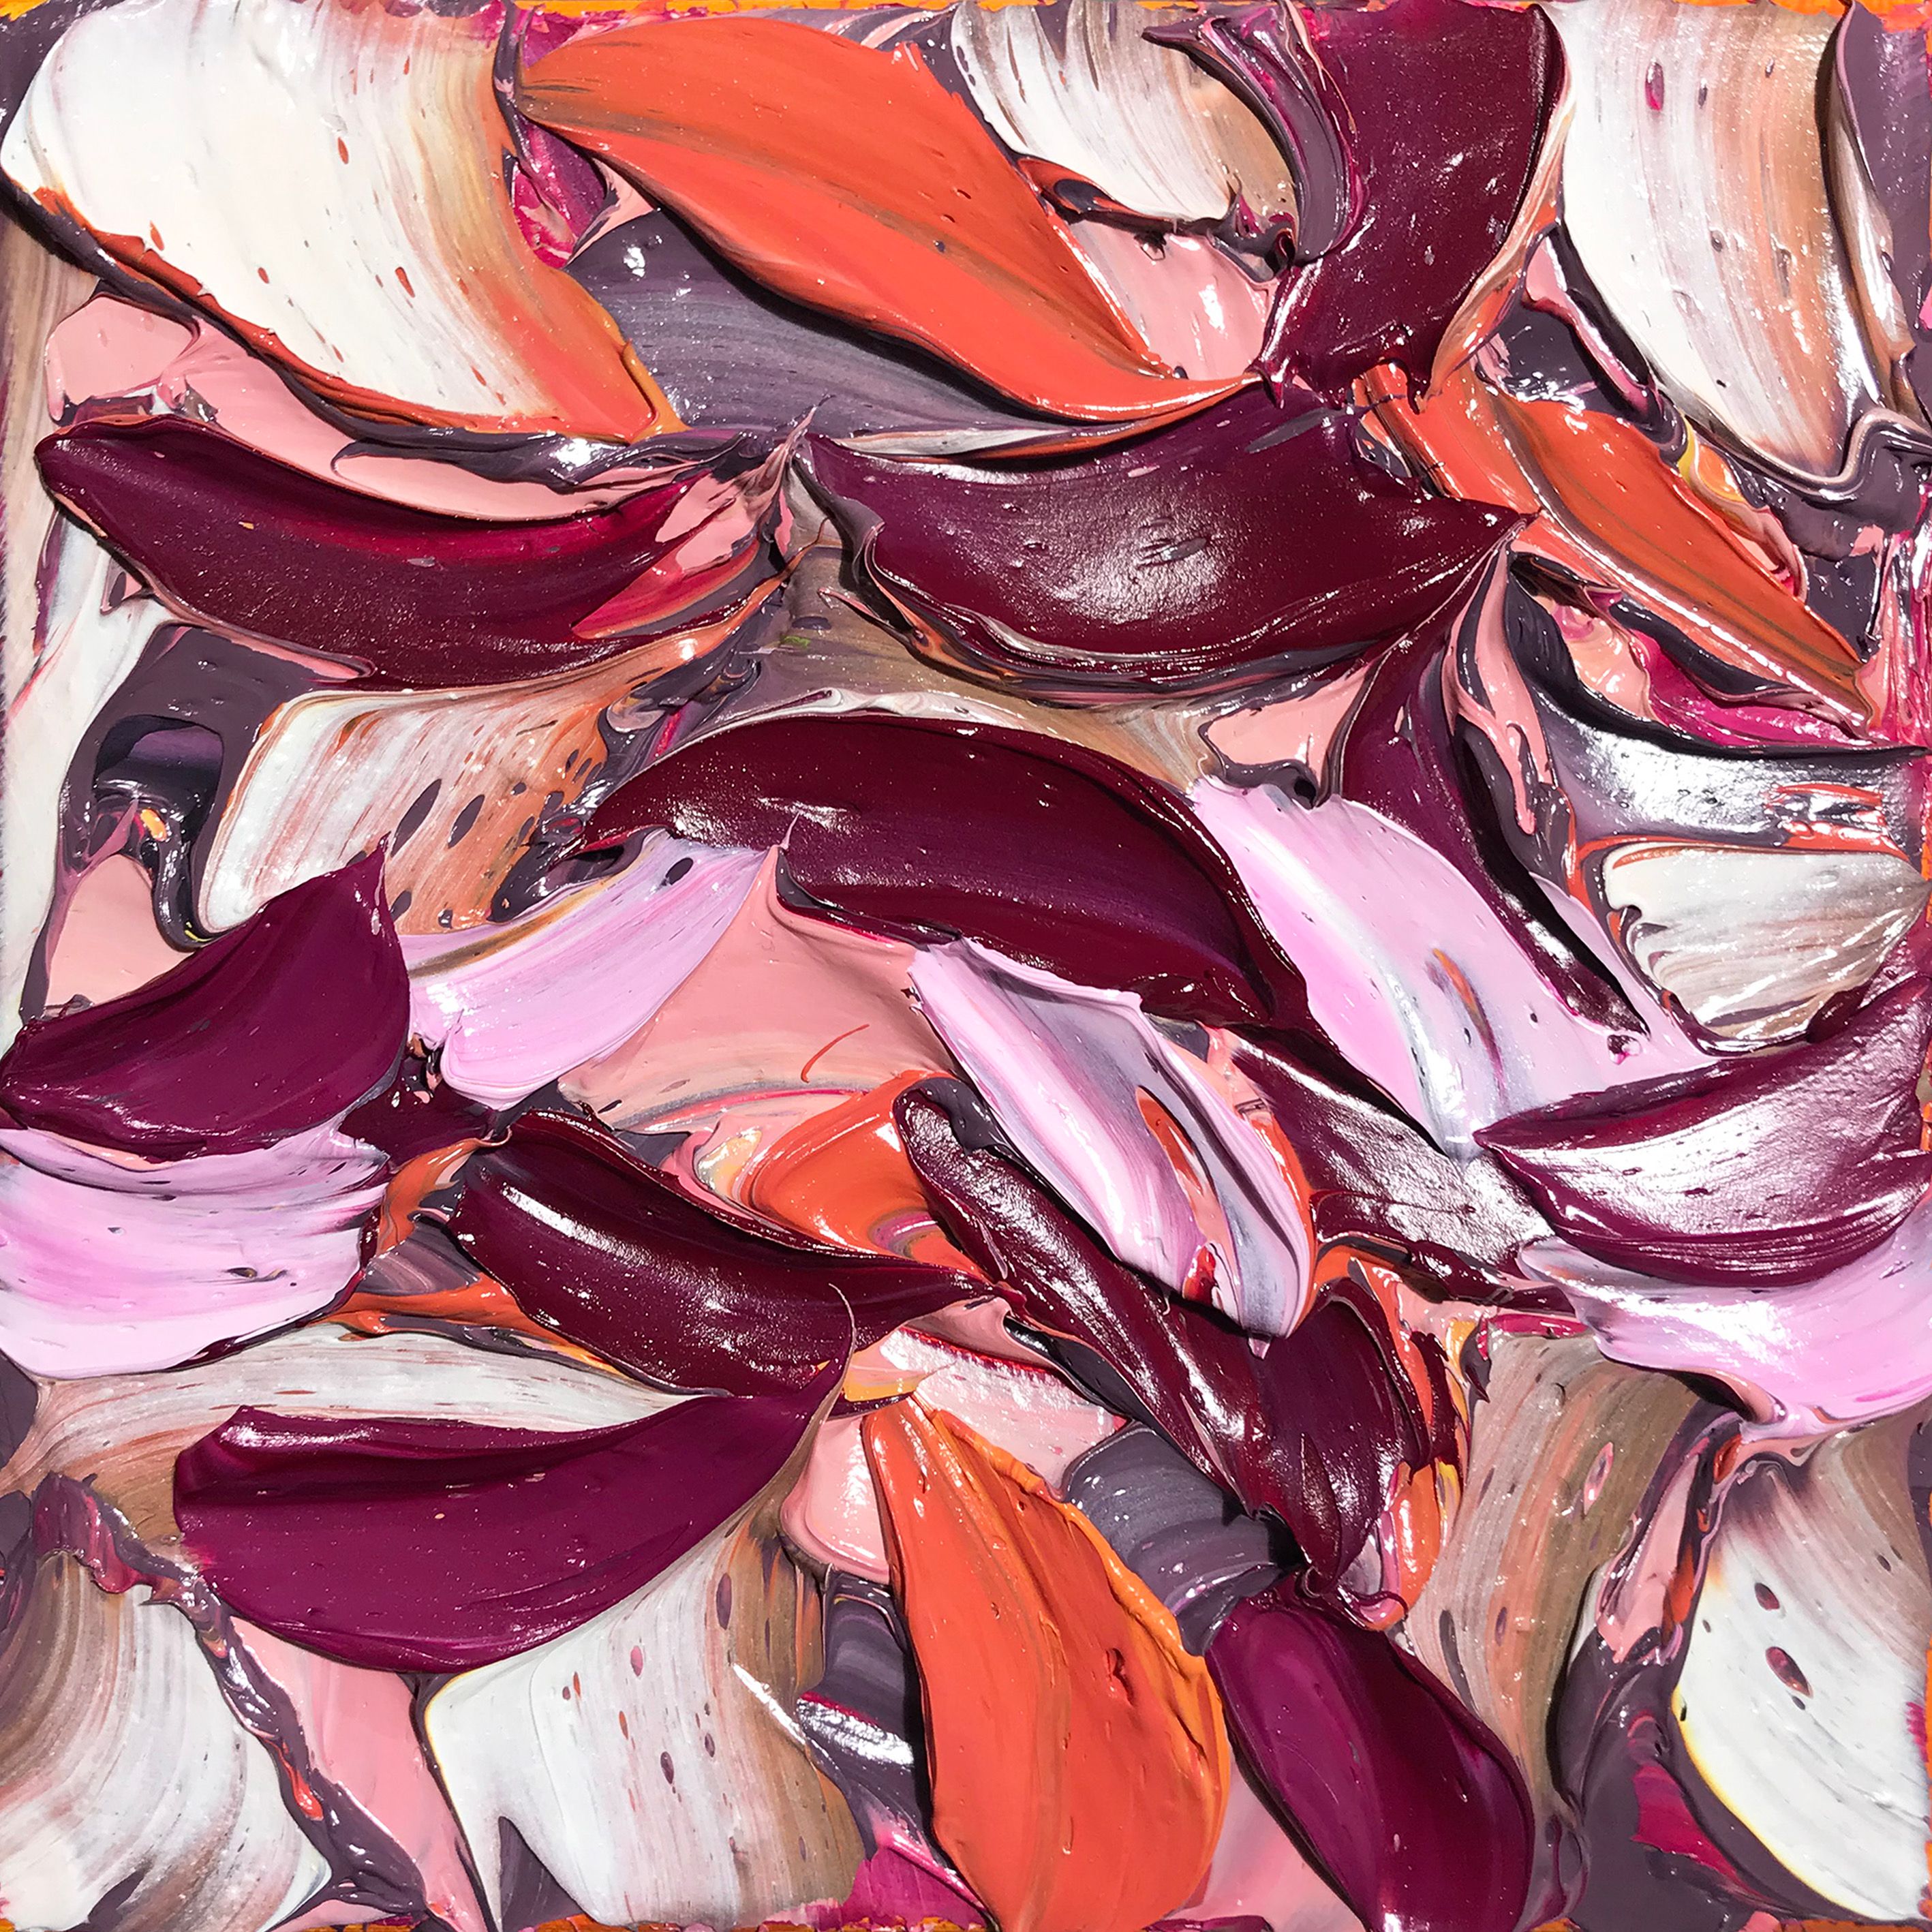 Oliver Messas "Coup de coeur..." Peinture abstraite de feuilles colorées